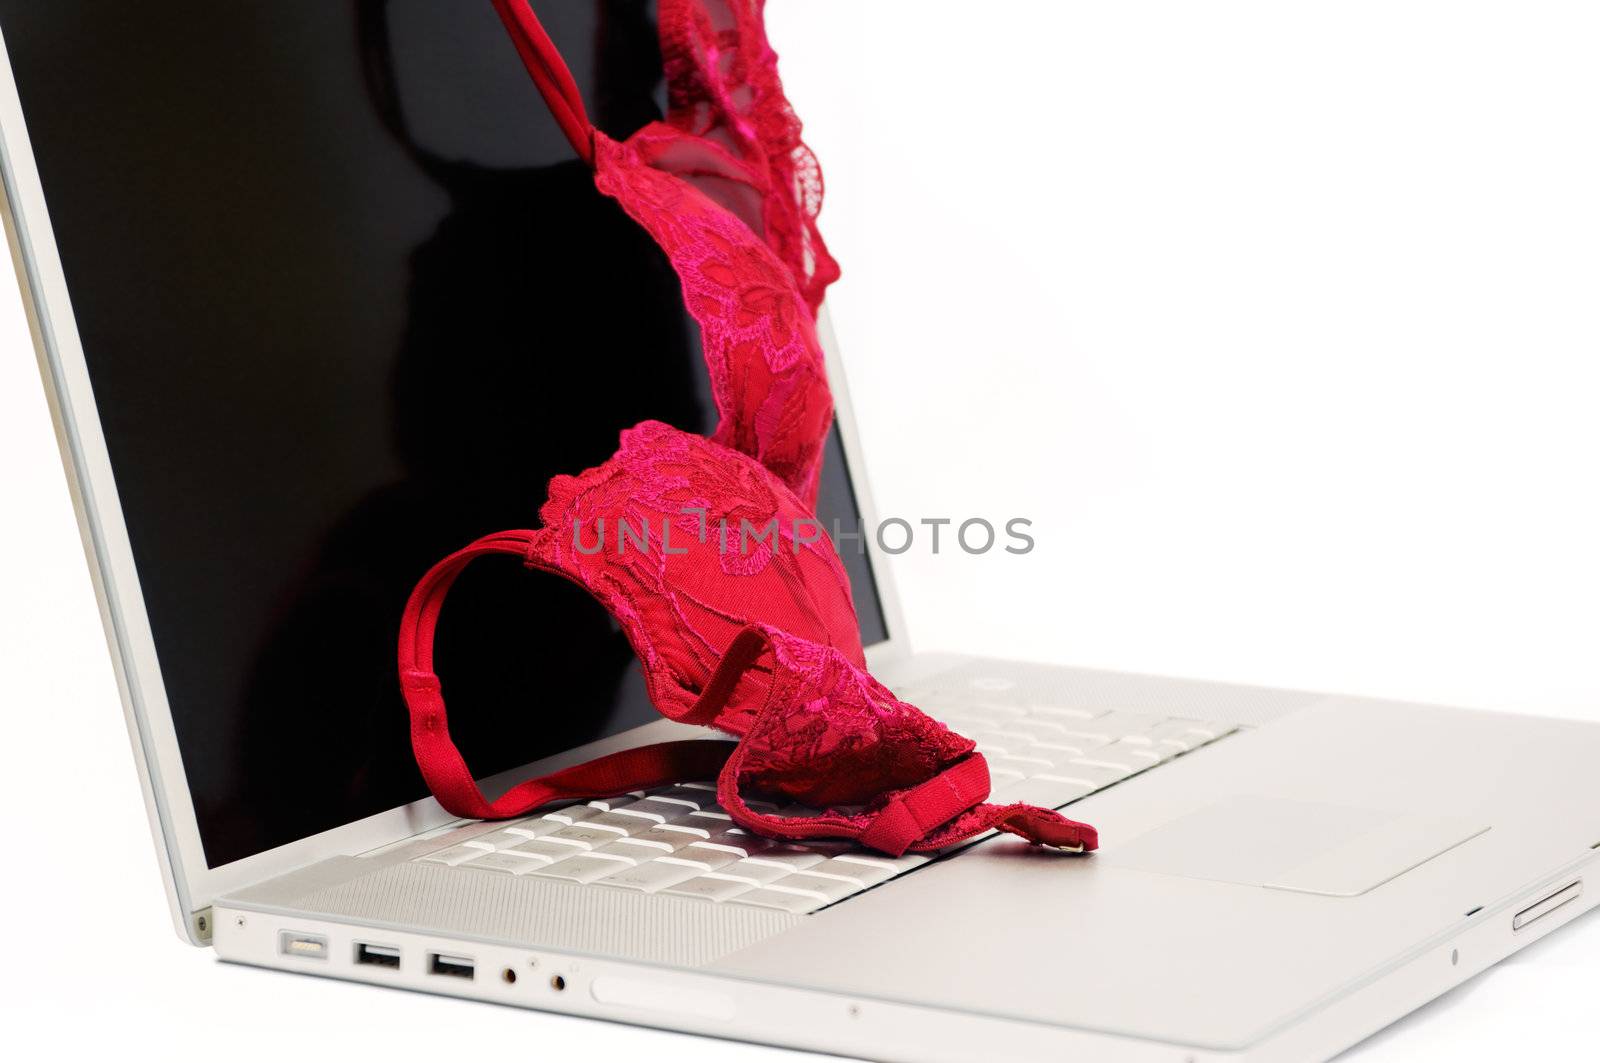 Red bra on laptop by akarelias